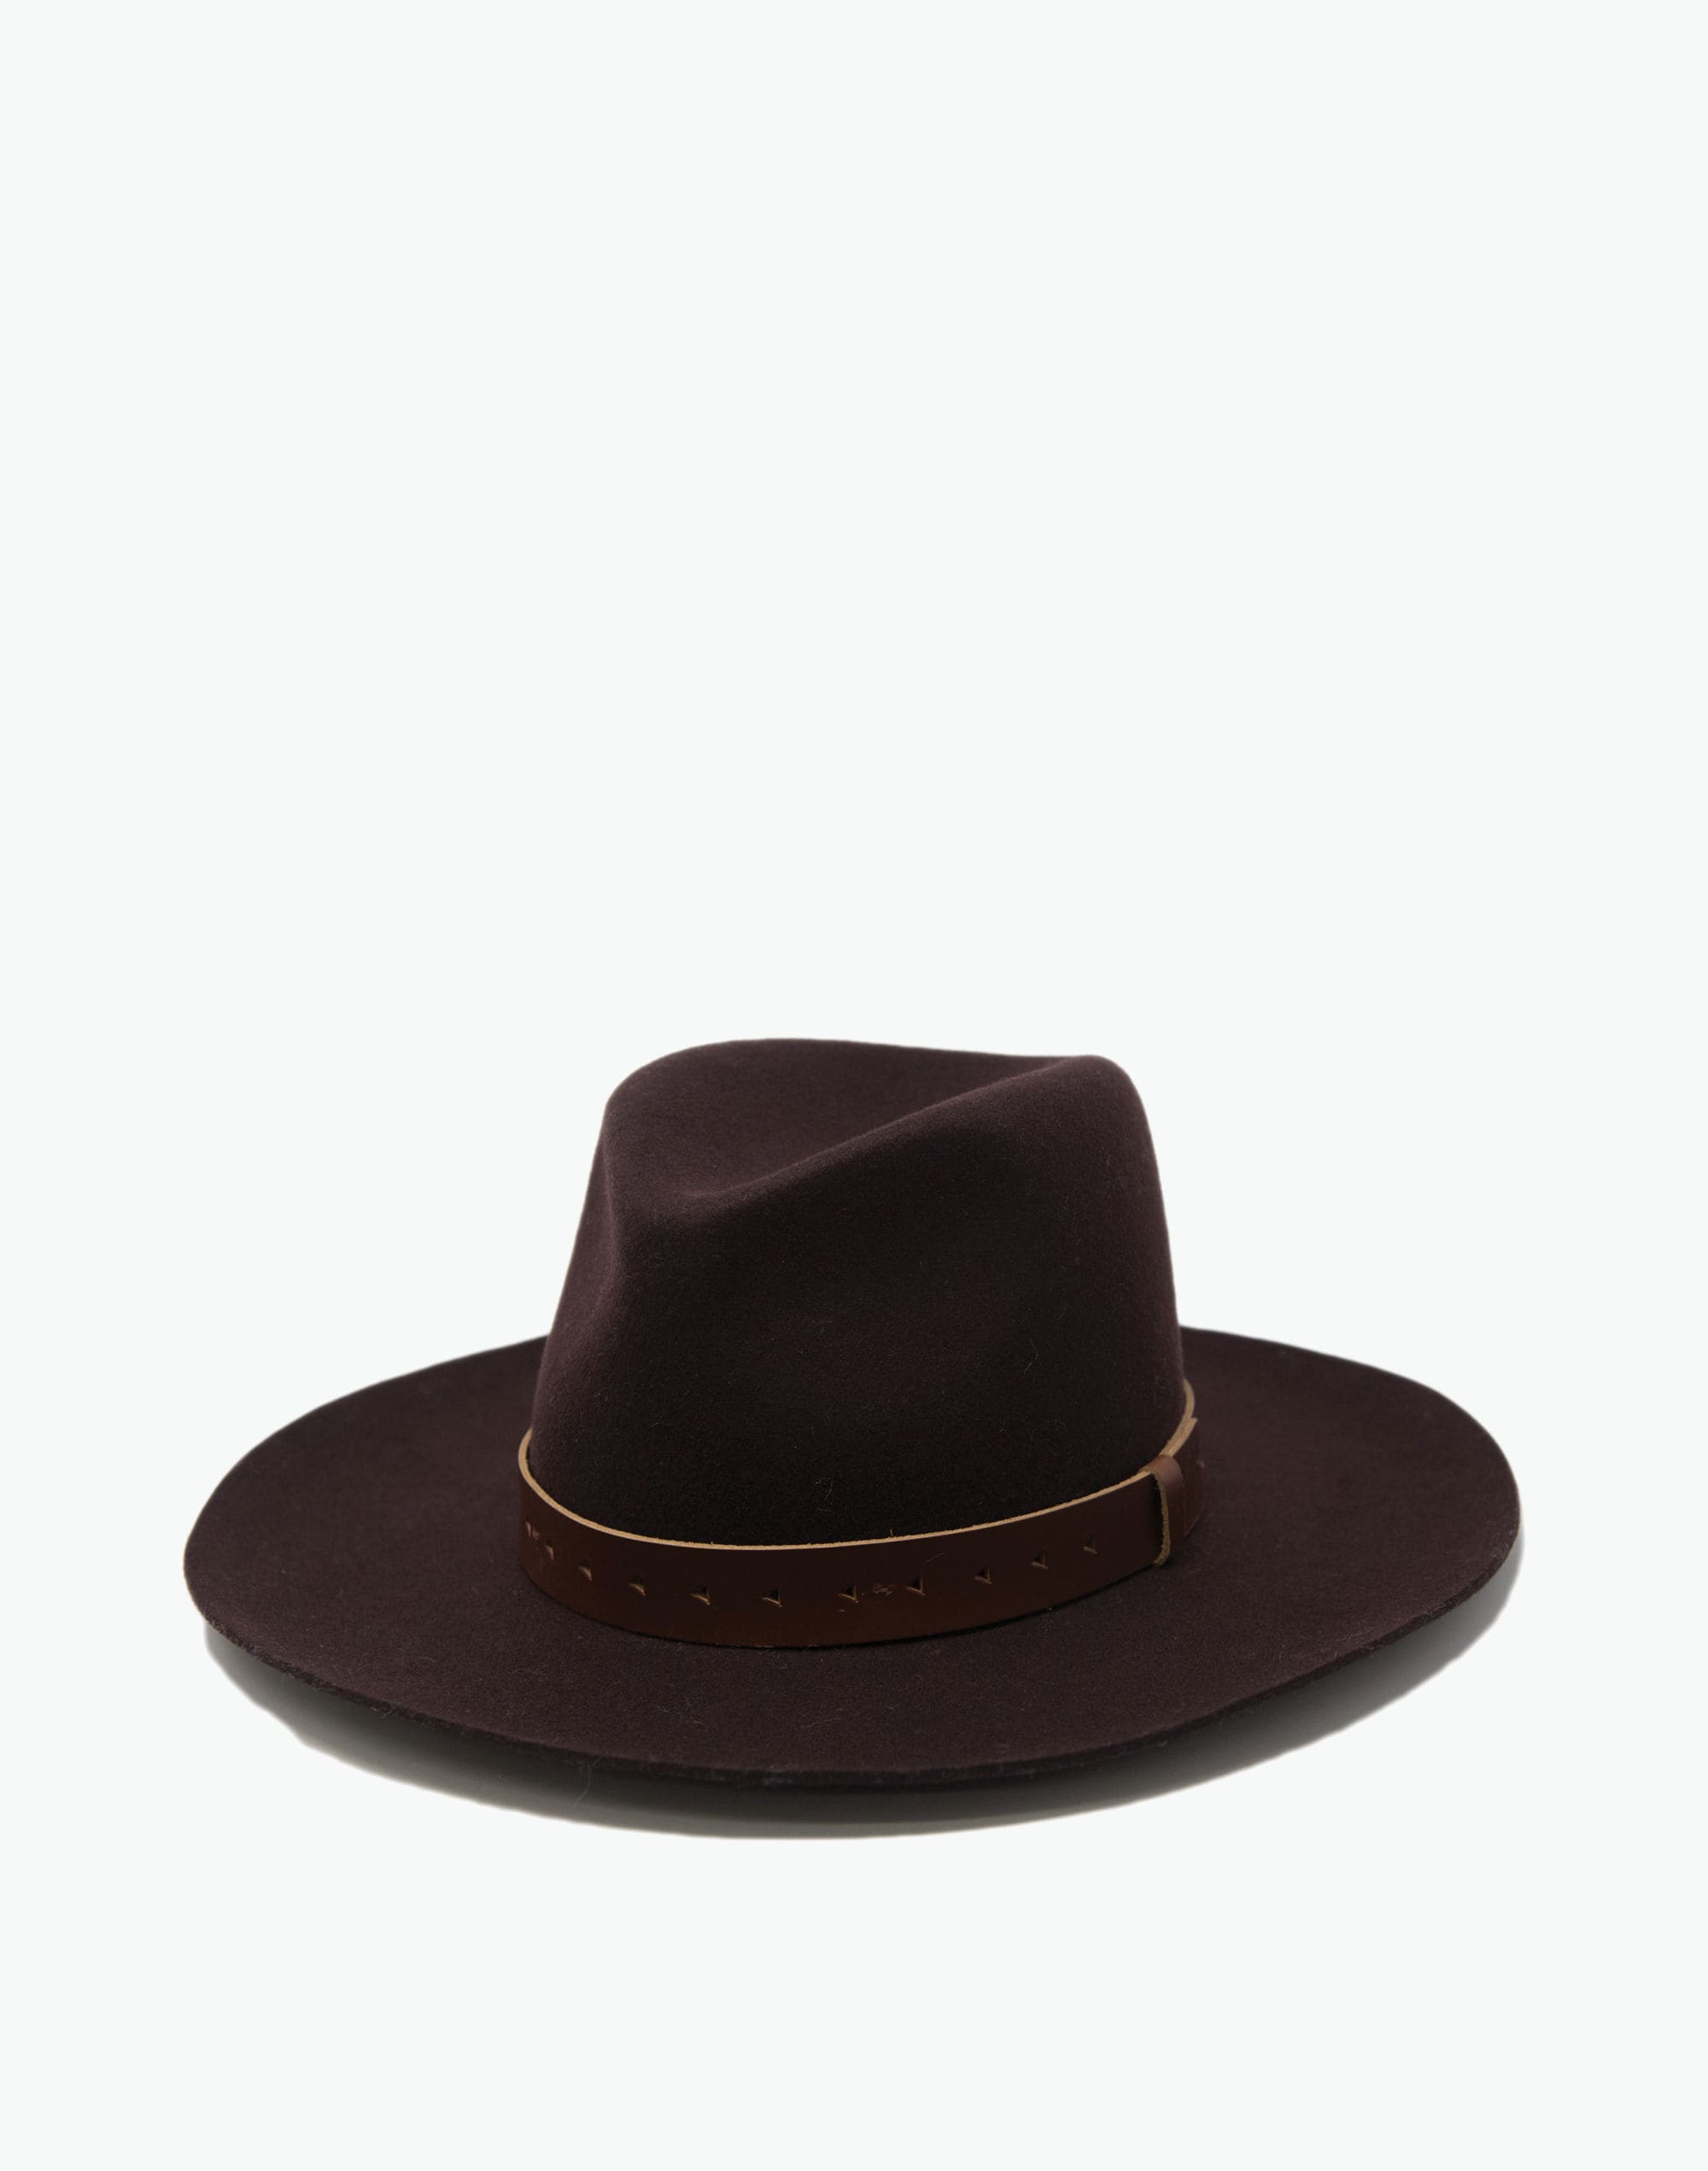 WYETH™ Wool Felt Harper Wide-Brim Fedora Hat